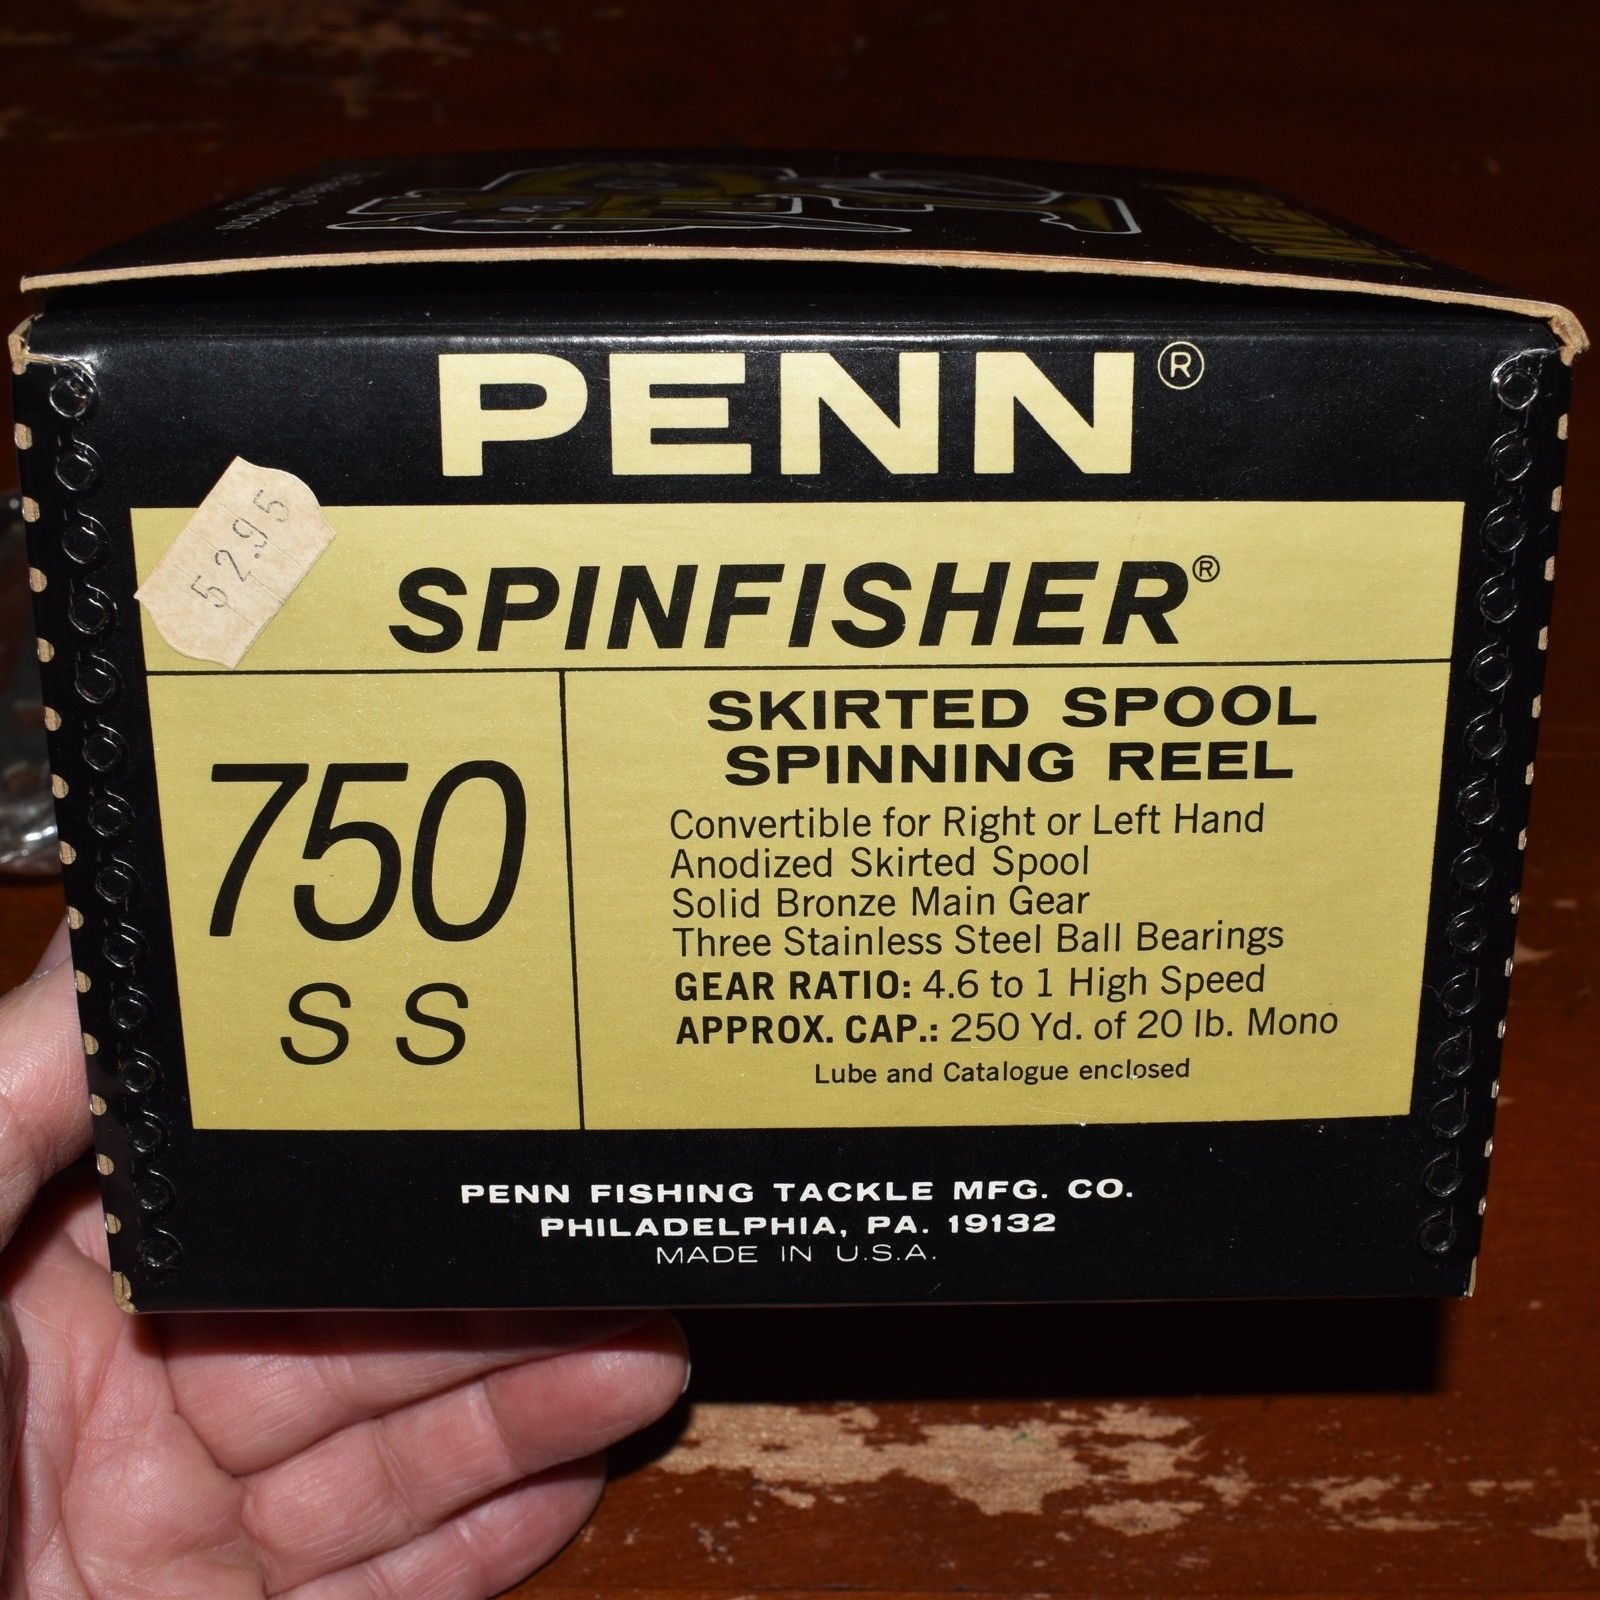 Penn 750 SS Skirted Spool Fishing Reel - Black/Gold